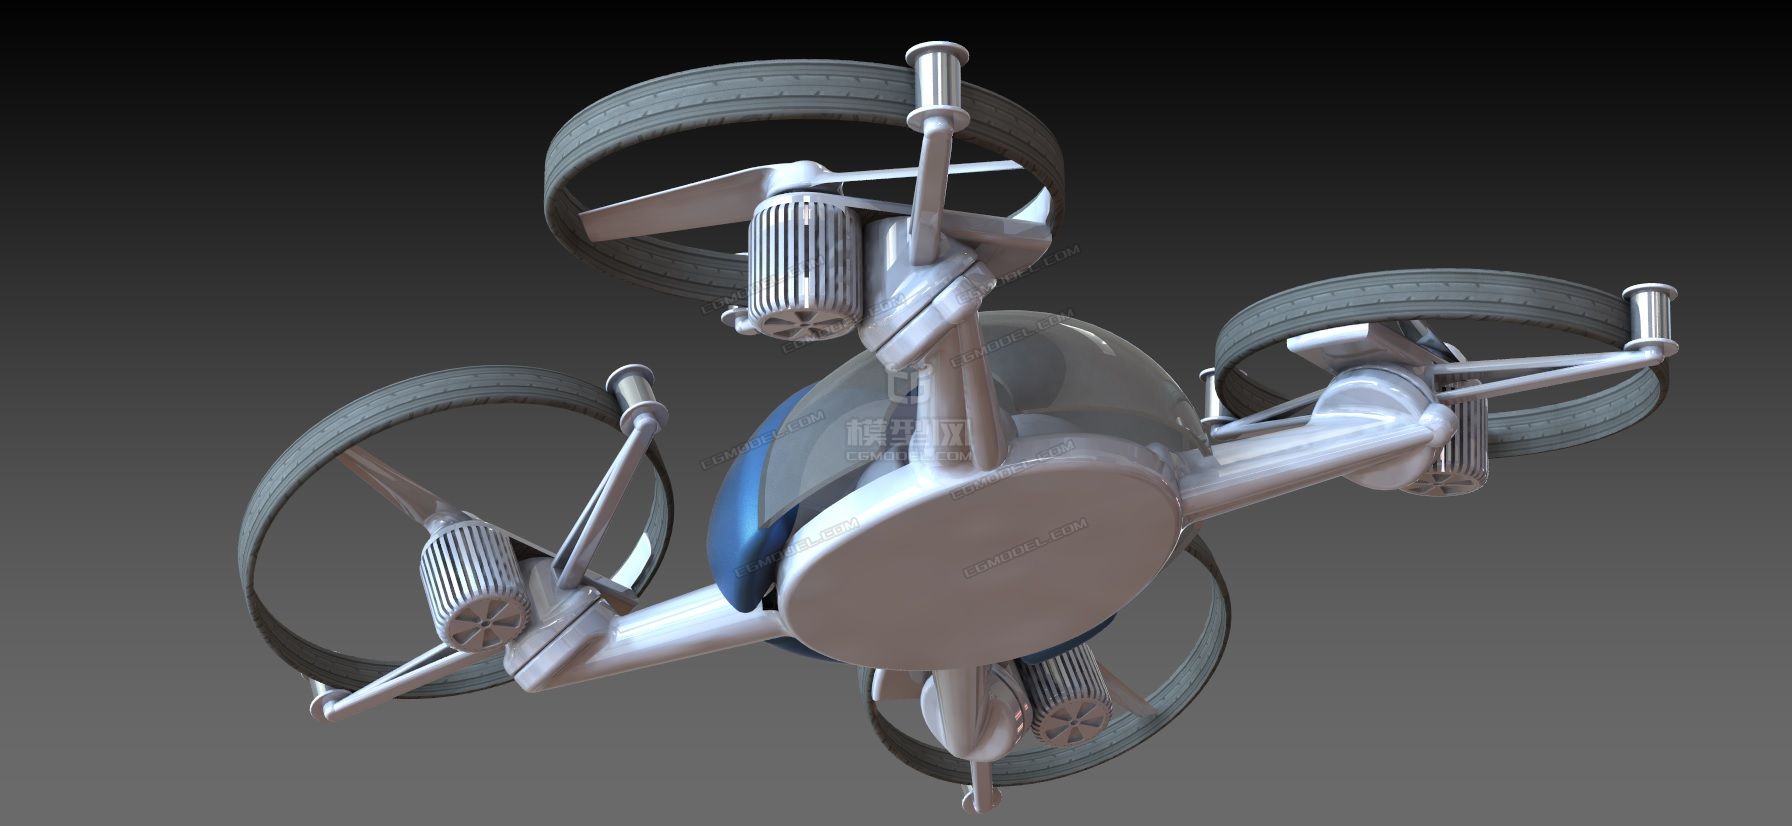 空陆两用载人四轴飞行器概念设计建模图纸-C